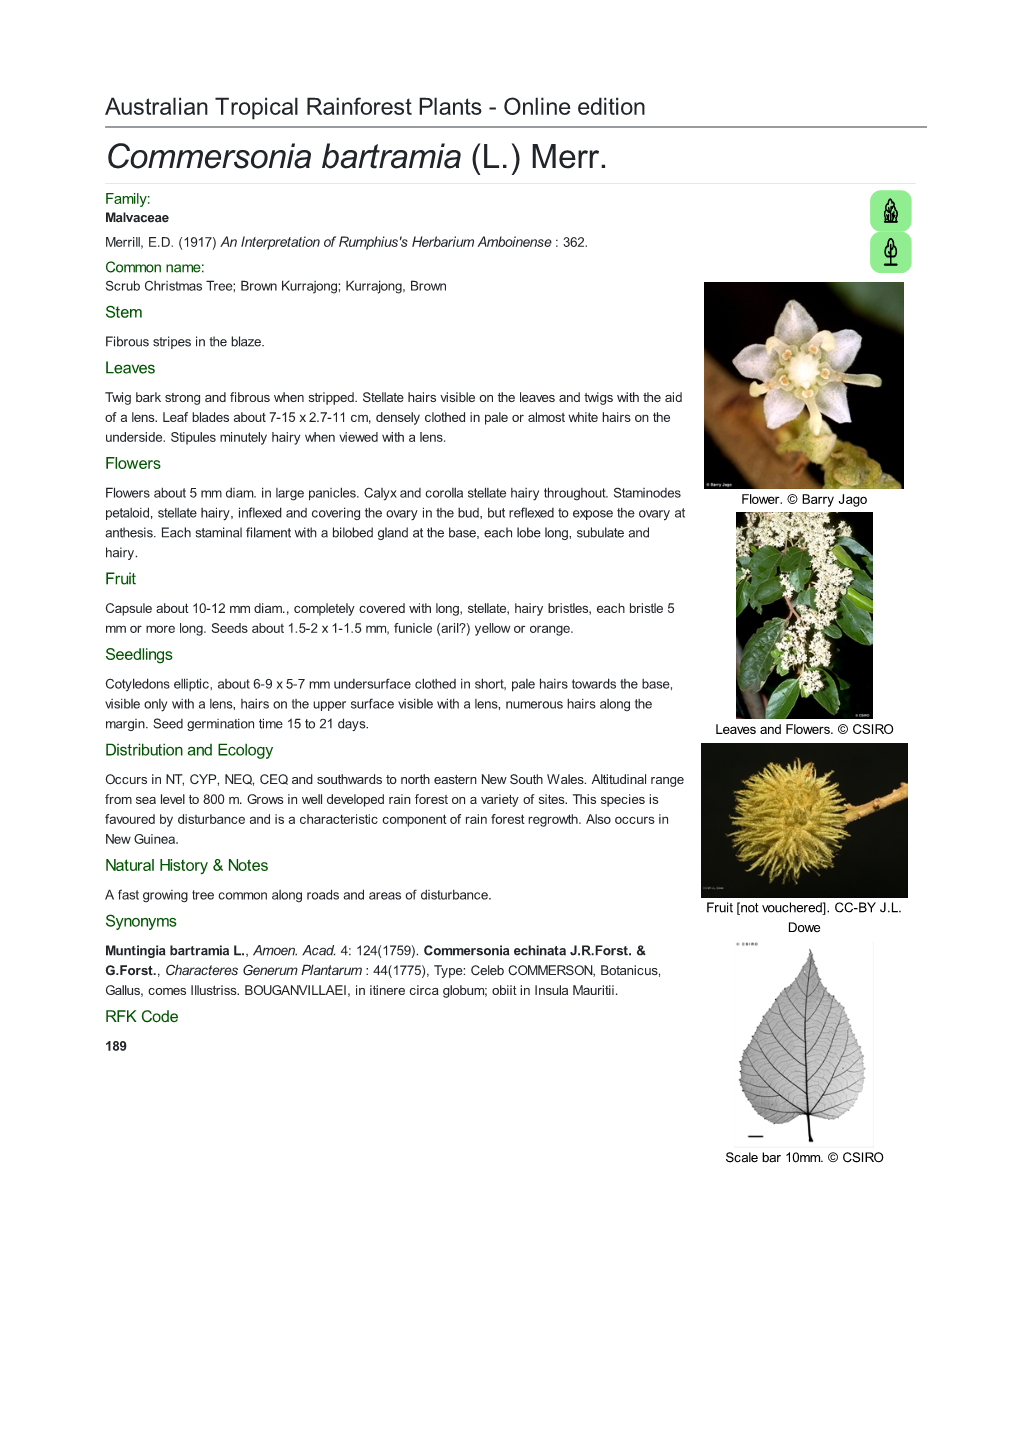 Commersonia Bartramia (L.) Merr. Family: Malvaceae Merrill, E.D